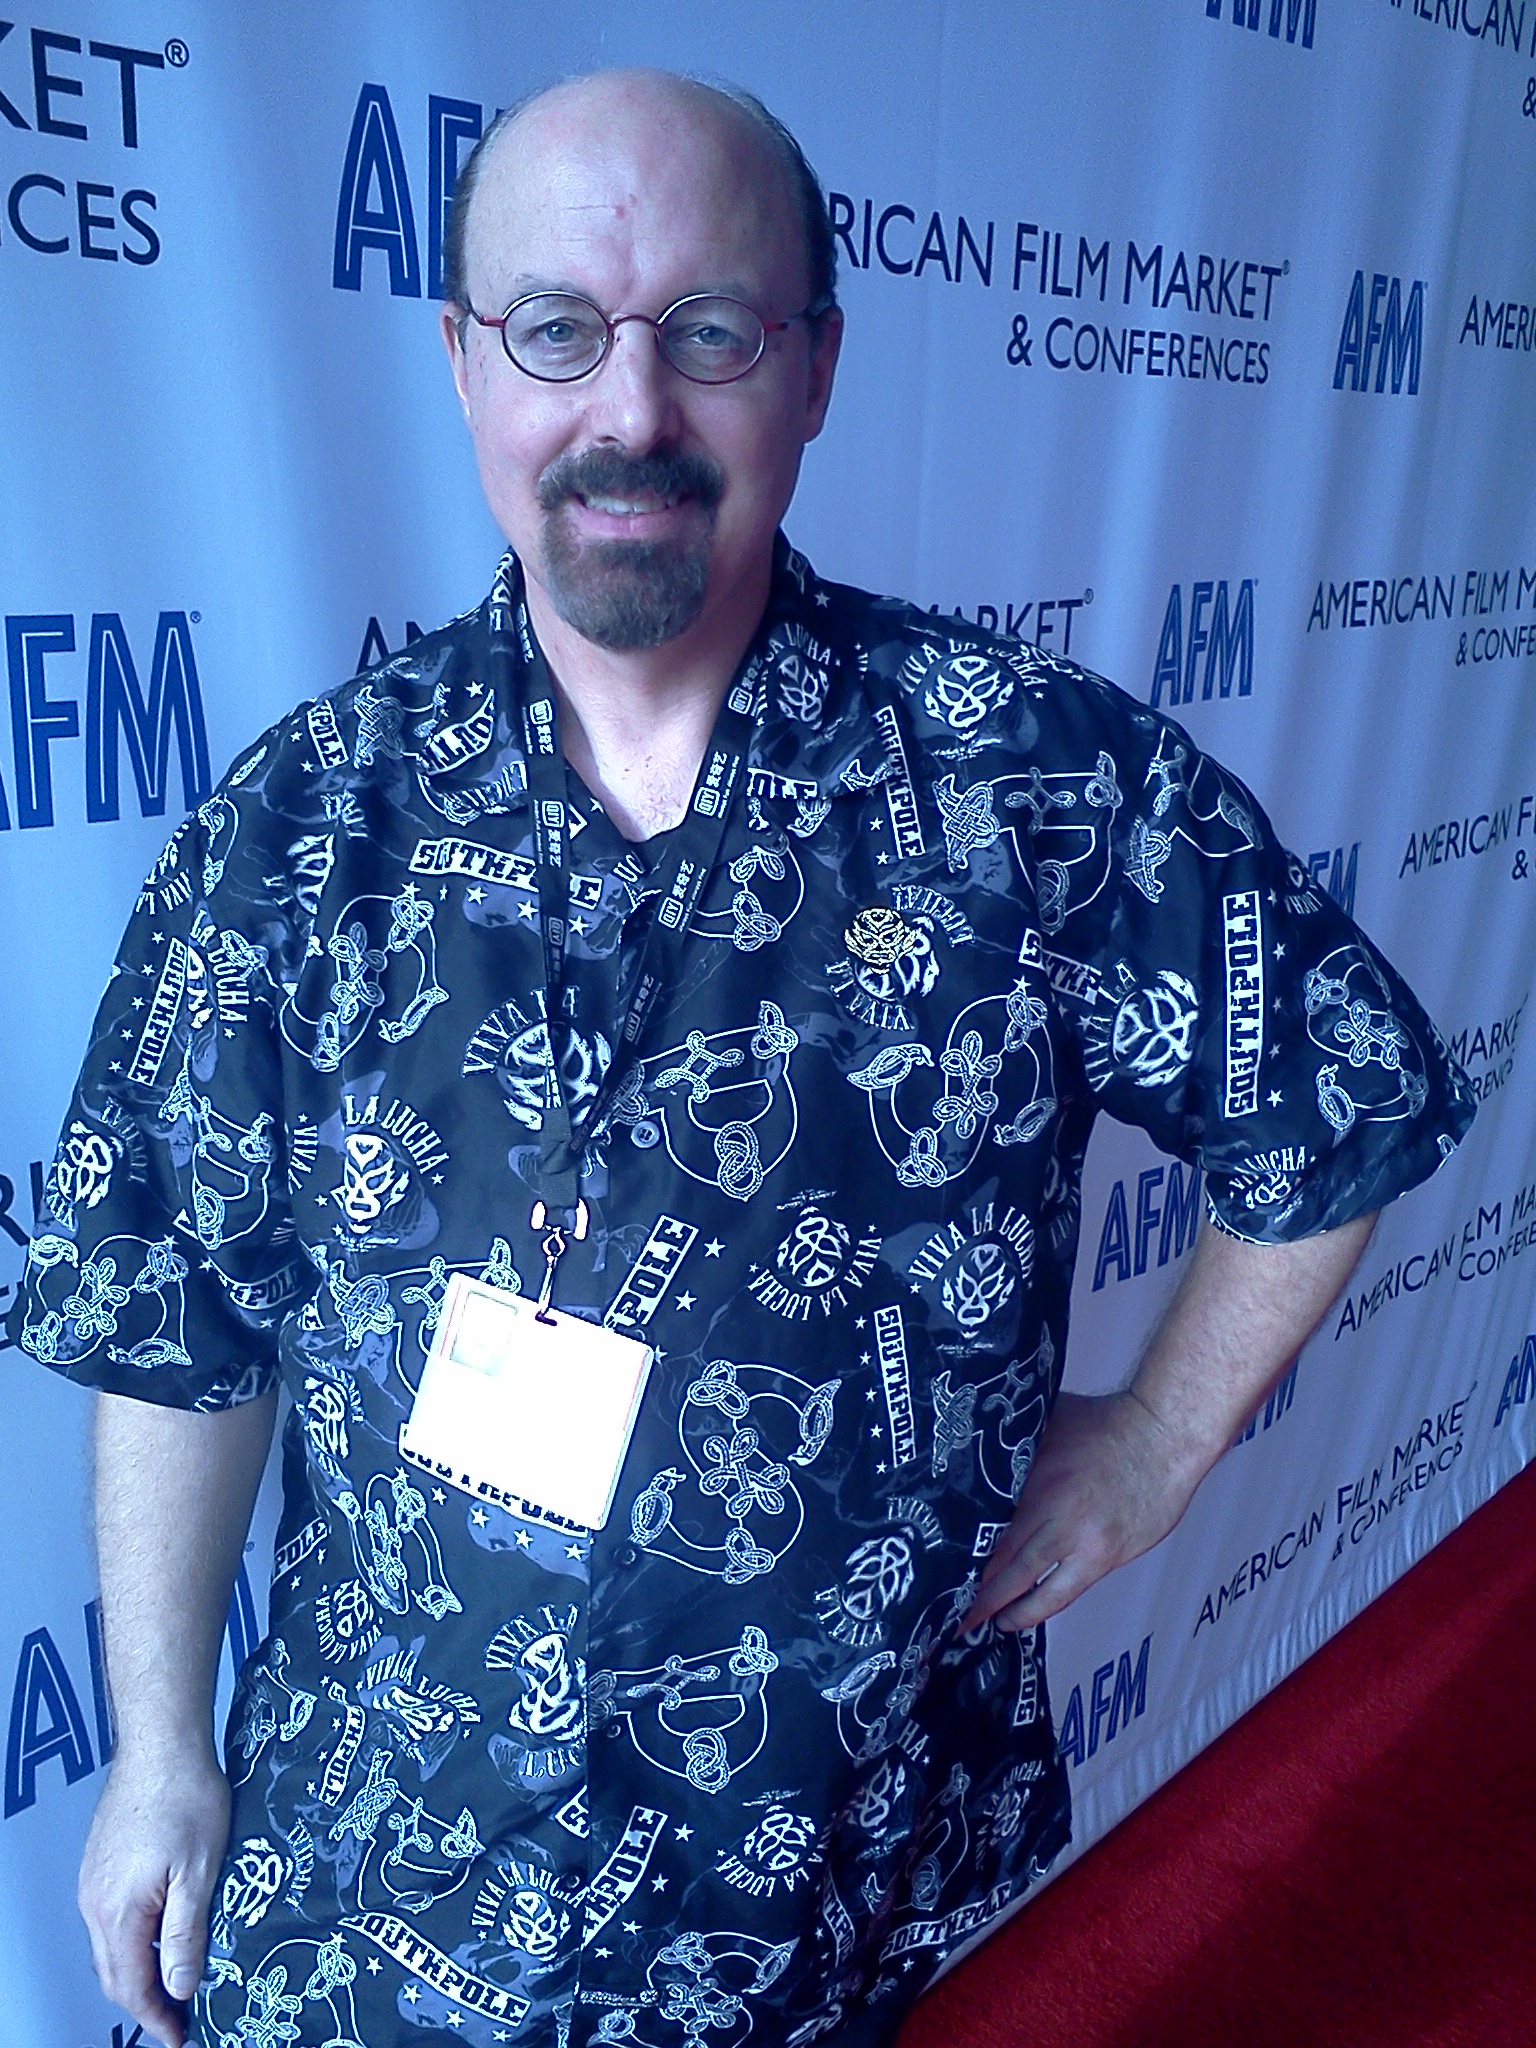 At 2014 AFM Conference, Santa Monica, CA